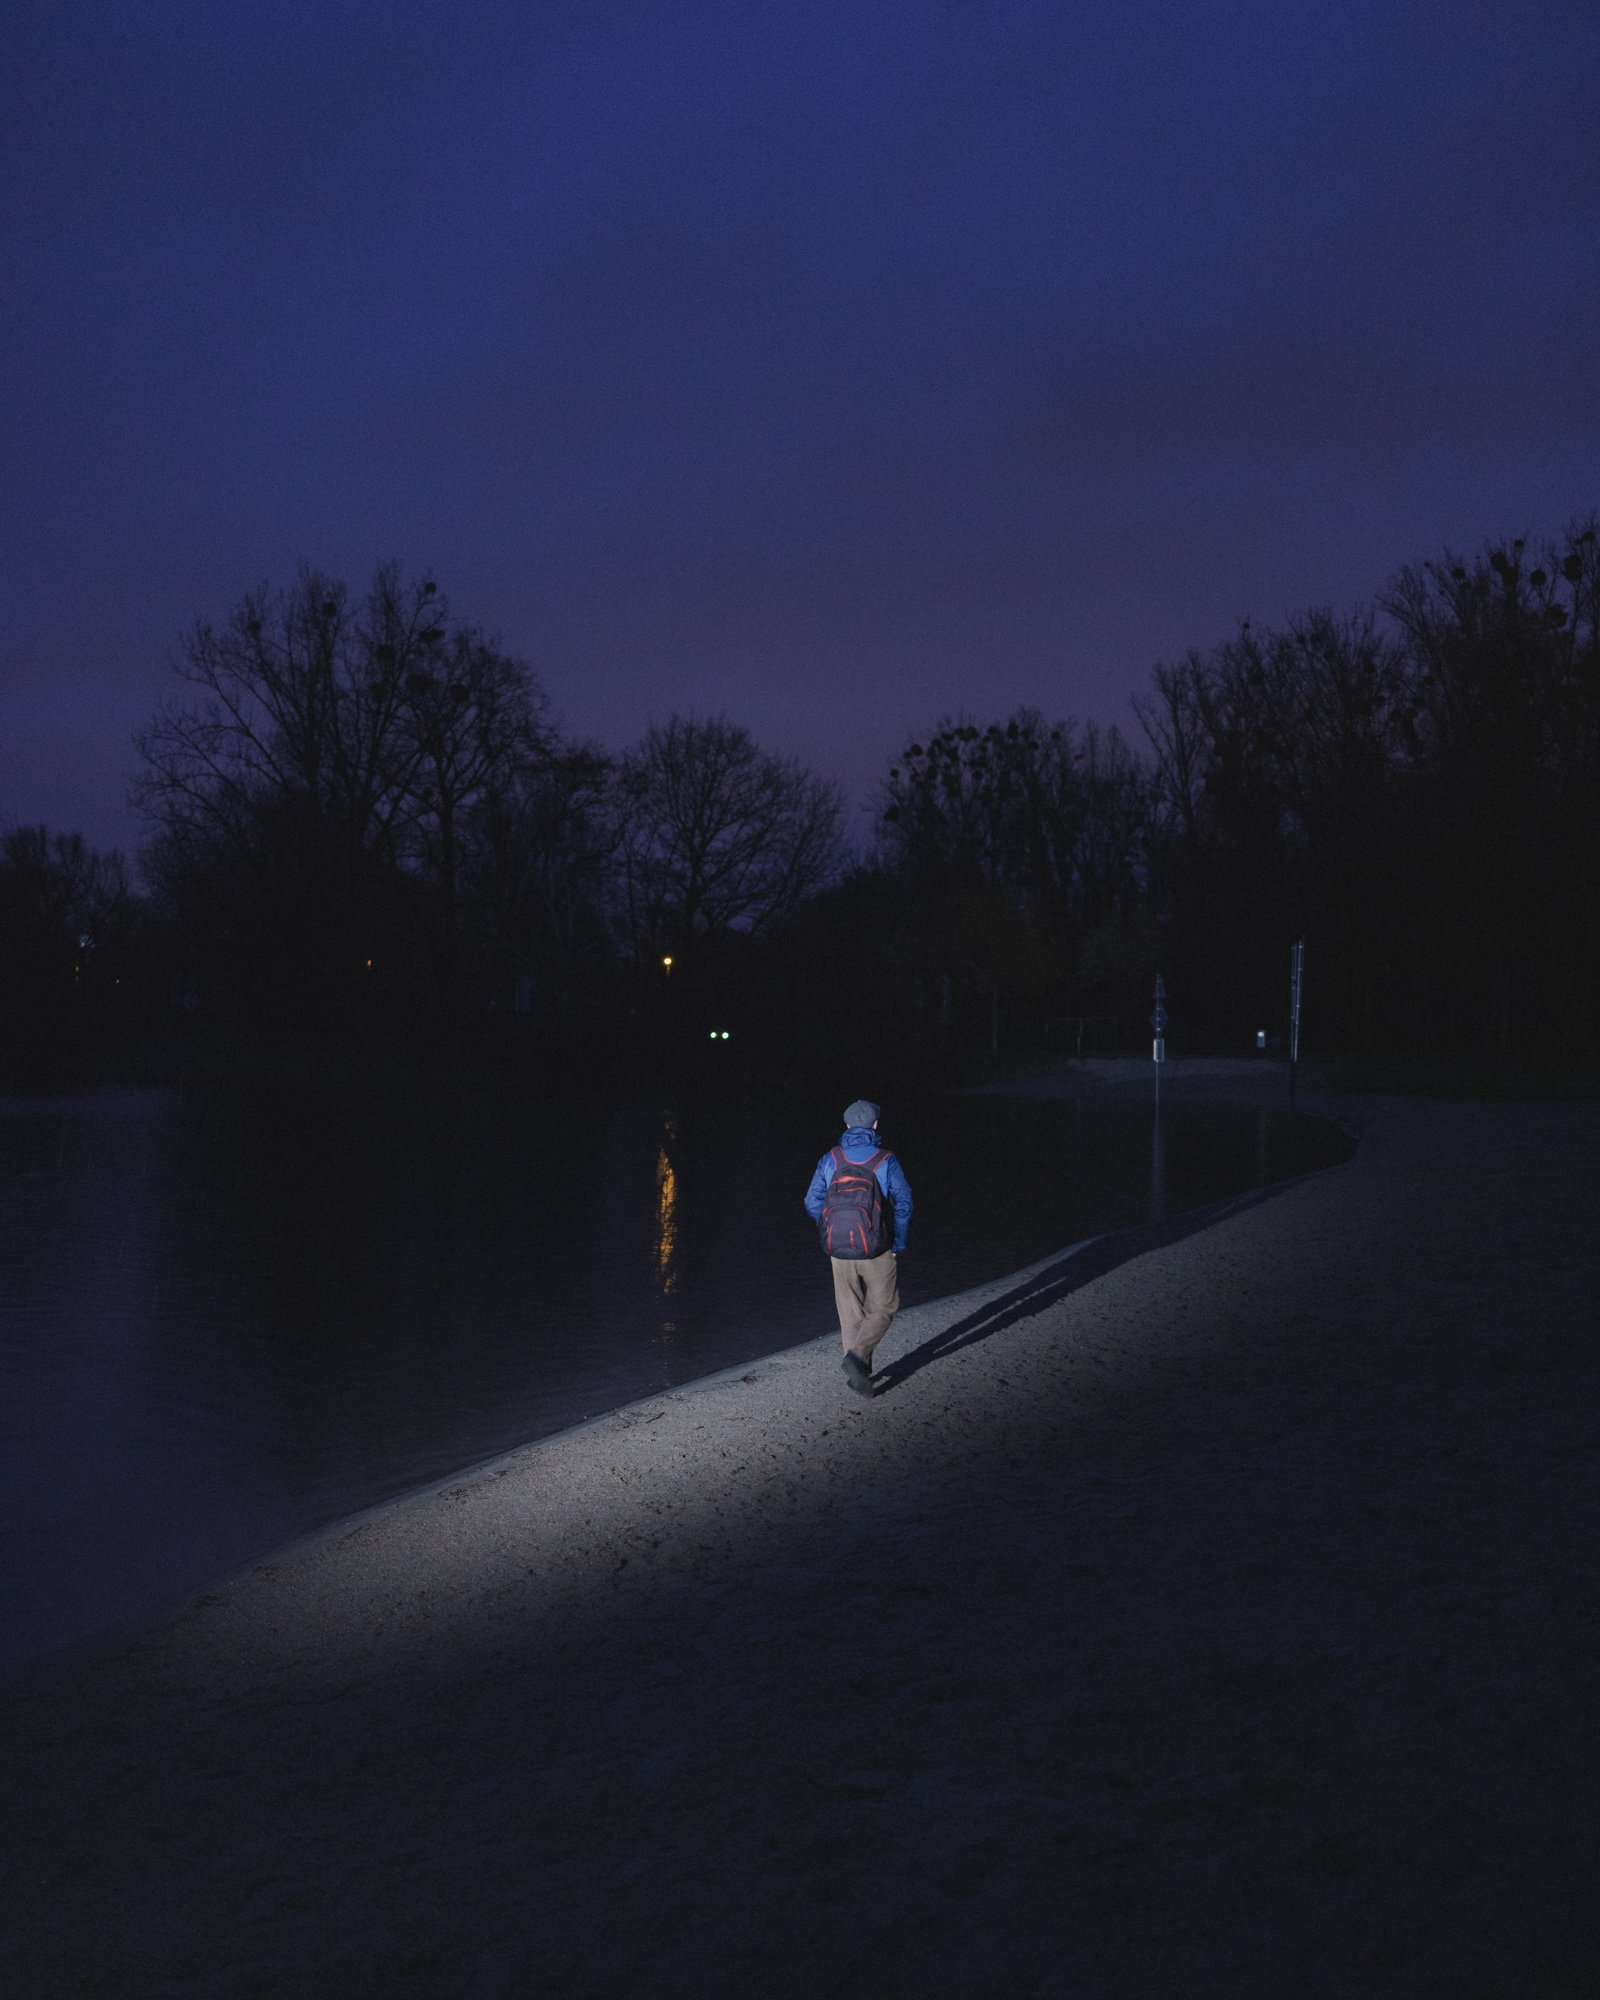  Janvier 2023. Lingolsheim, France. L’artiste russe Dmitry Stepanov, demandeur d’asile en France, près du Lac Achard où il vient régulièrement marcher. 